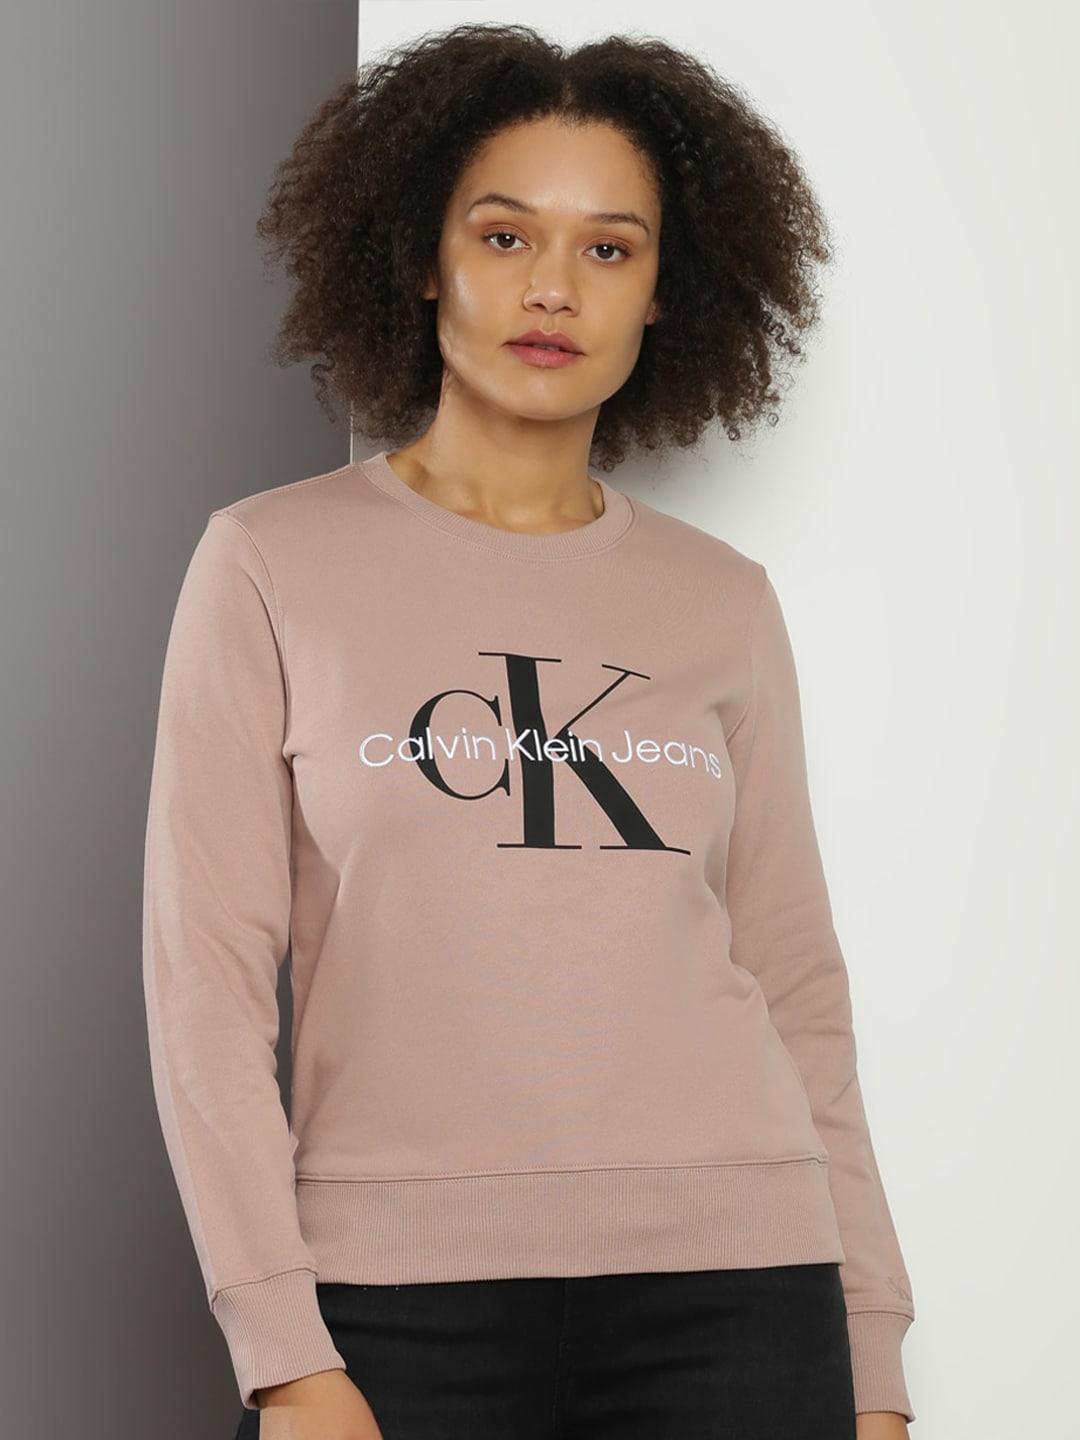 Calvin Klein Jeans Brand Logo Printed Round Neck Pure Cotton Sweatshirt